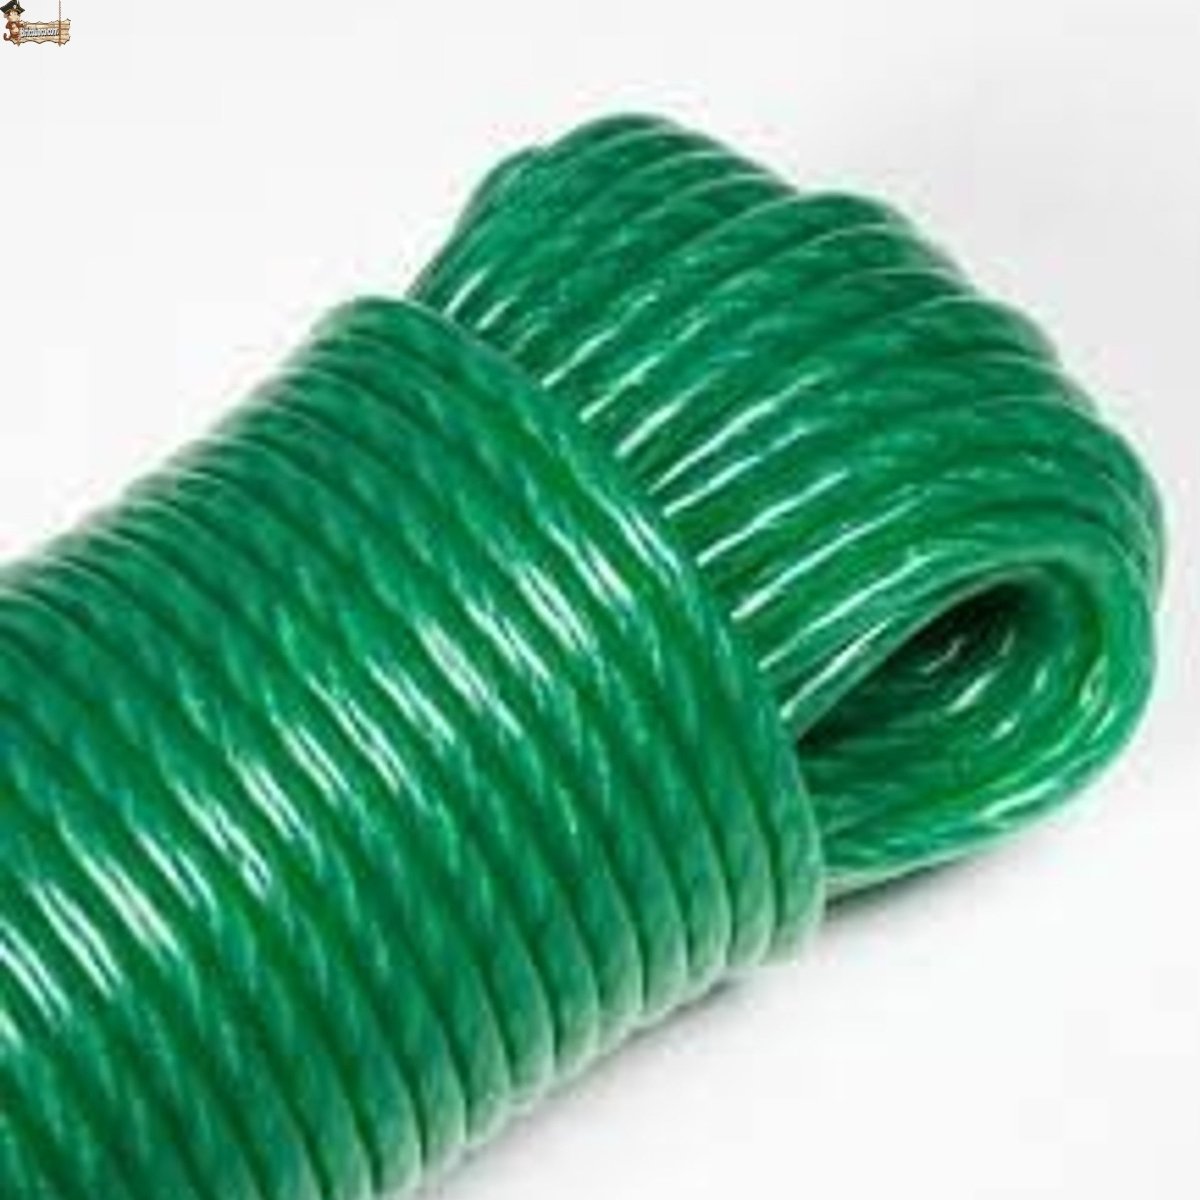 PrixPrime - Cuerda verde de PVC para tender la ropa 30m x 3mm